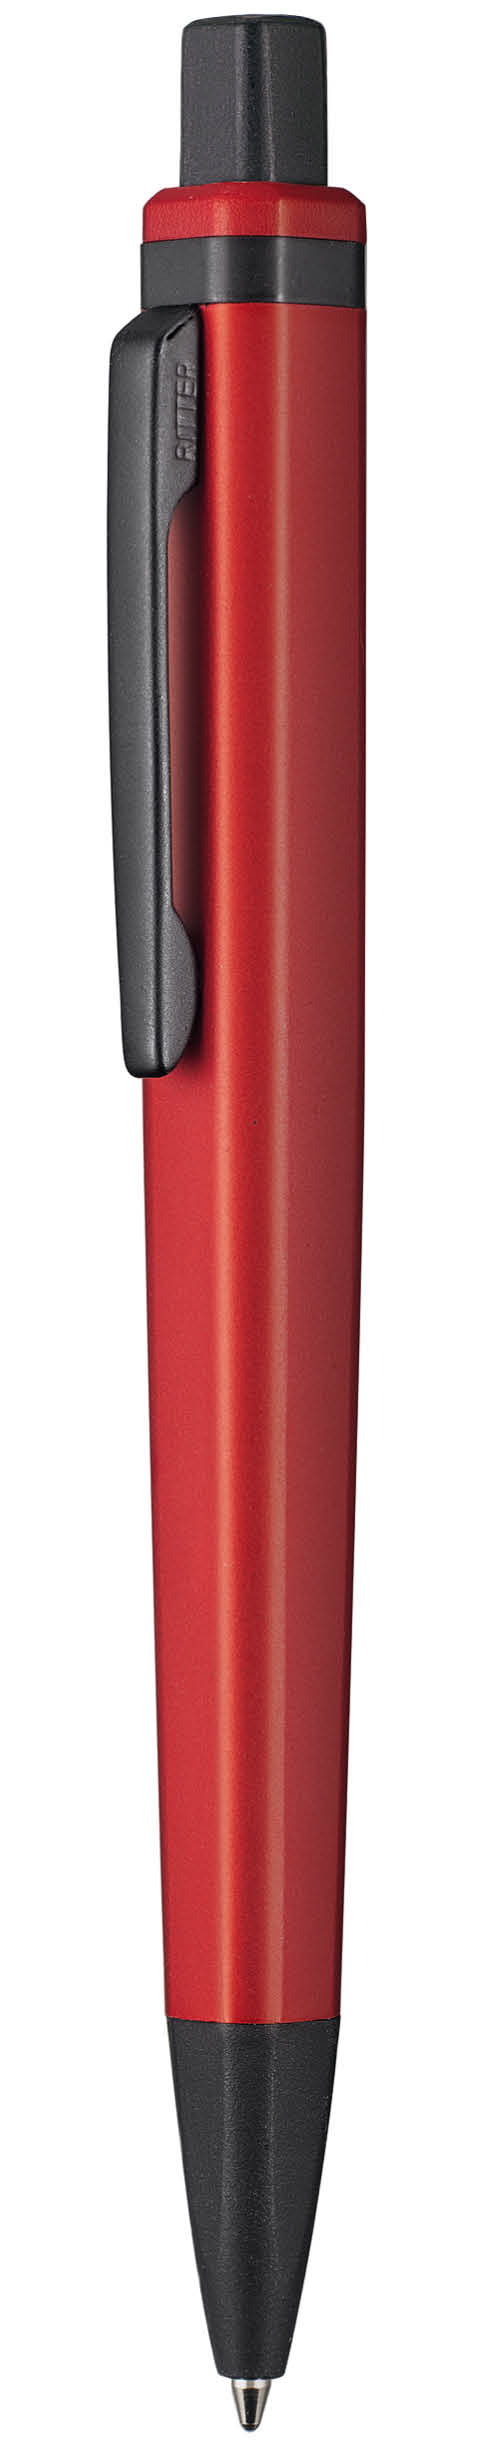 Kugelschreiber SQUAREPEN RED Ritter-Pen